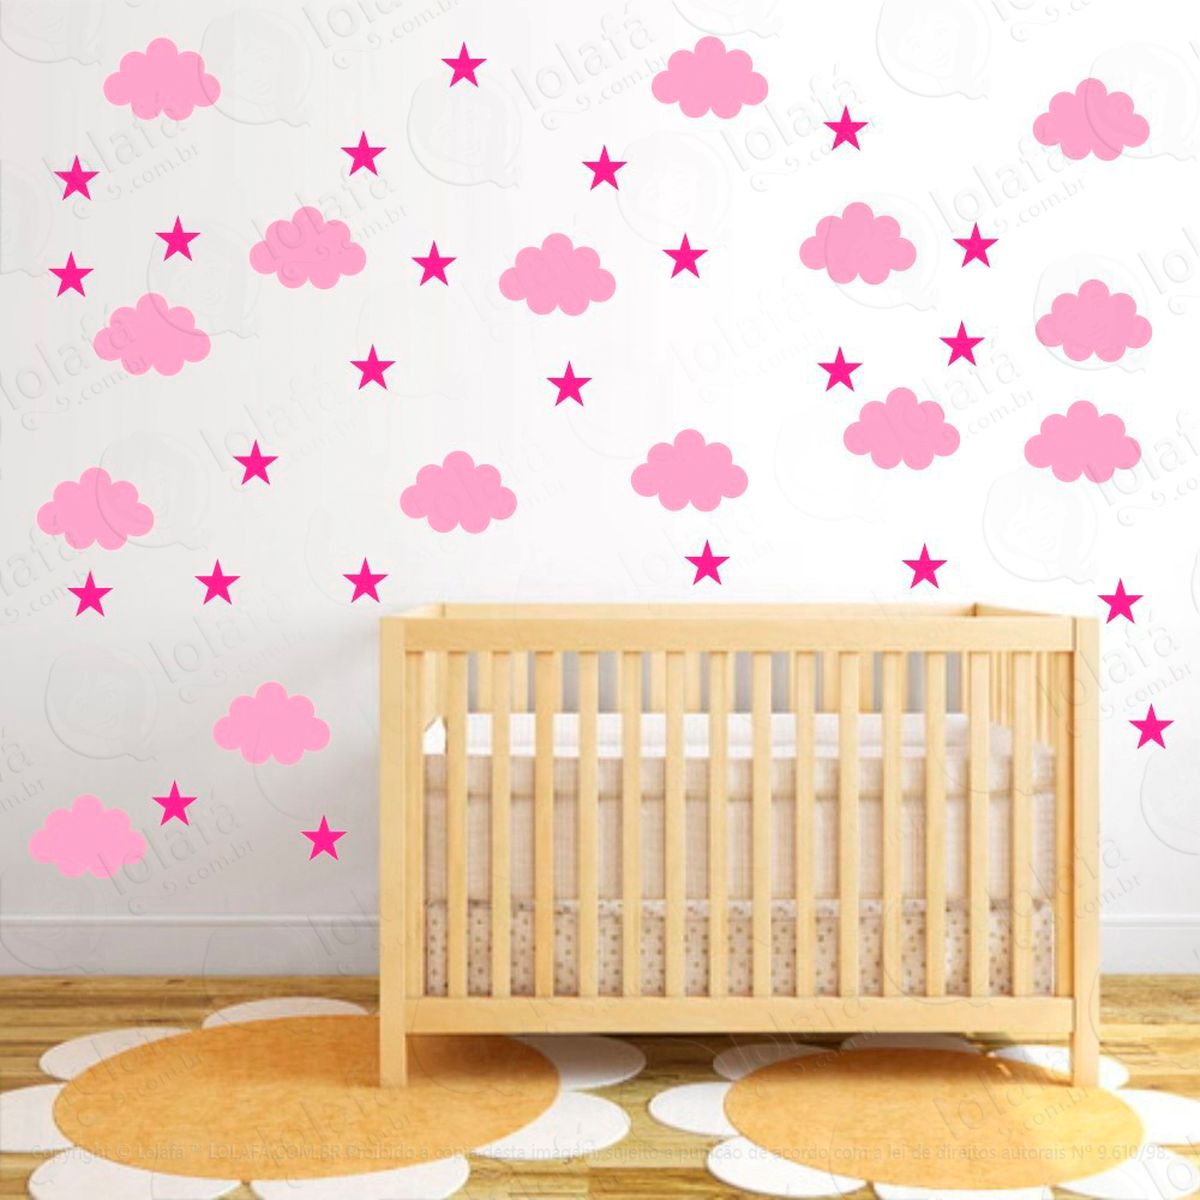 adesivos nuvens e estrelas 100 peças adesivos para quarto de bebê infantil - mod:897